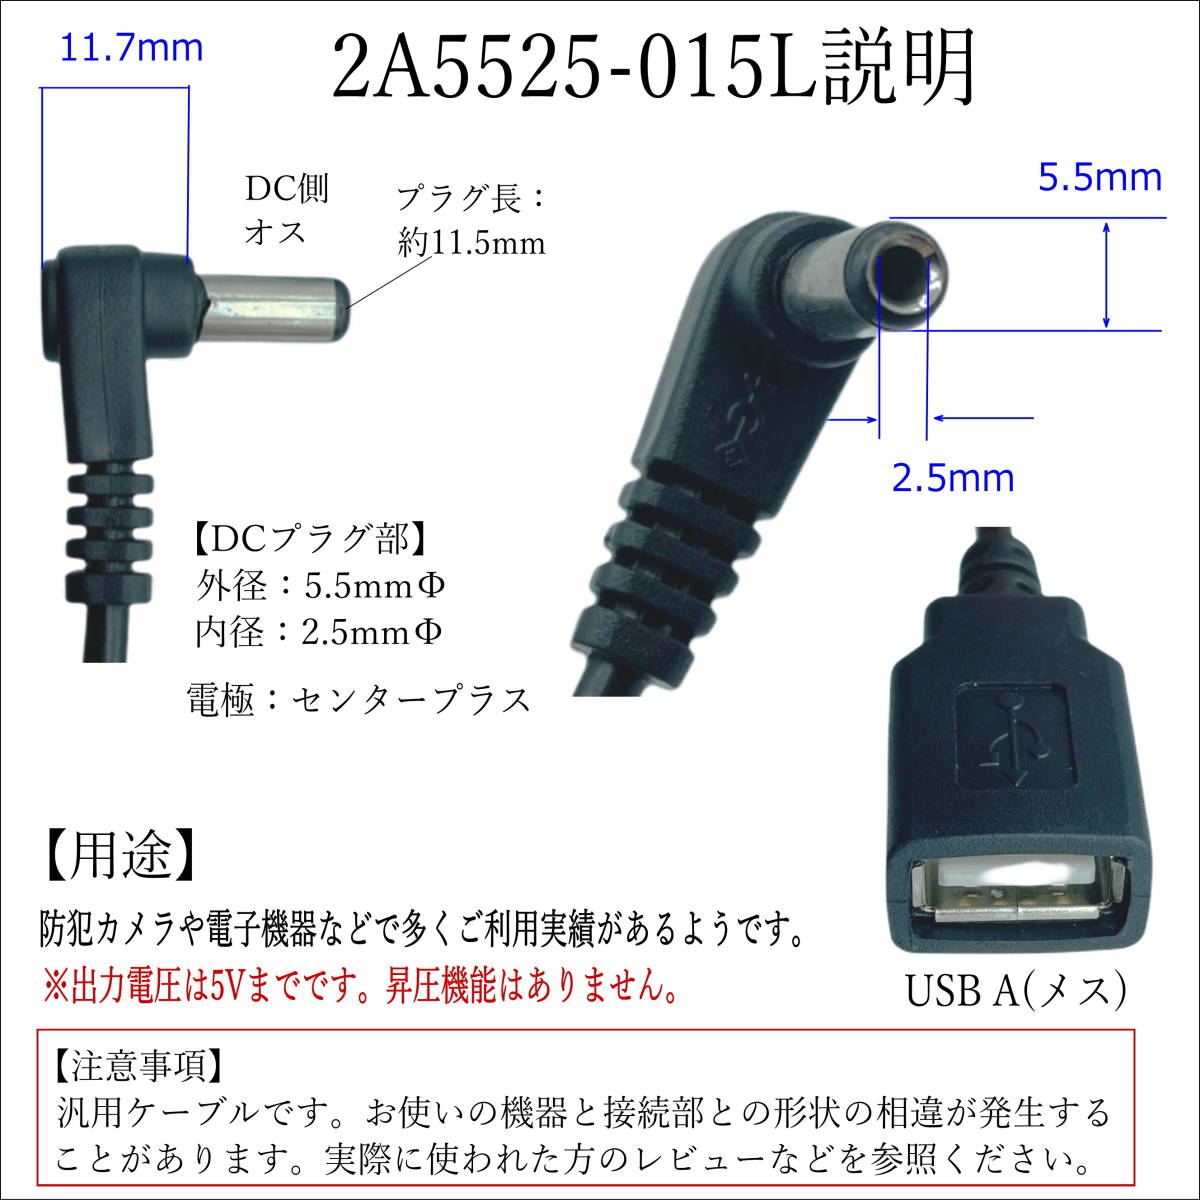 △USB【延長】電源供給ケーブル DC(外径5.5/2.5mm)オス L字型プラグ -USB A(メス) 5V 0.5A 15cm 2A5525015L△